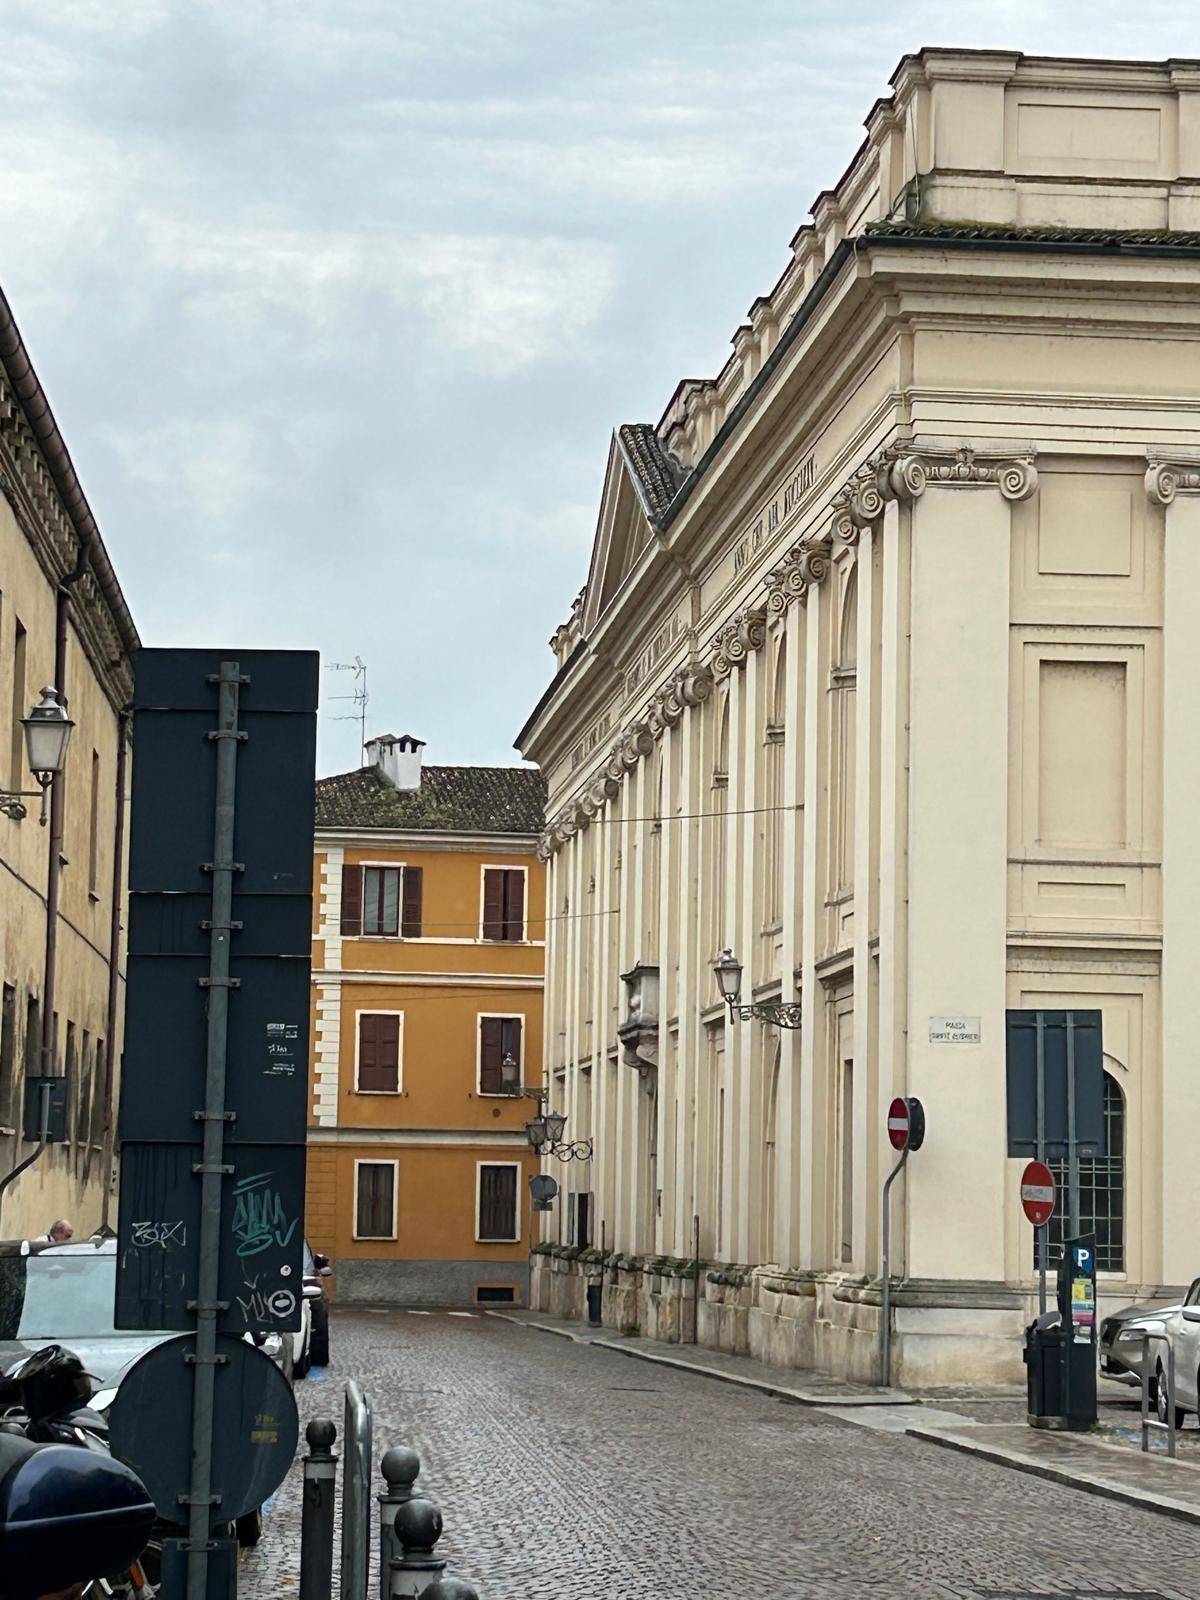 Casa indipendente in vendita, Mantova centro storico